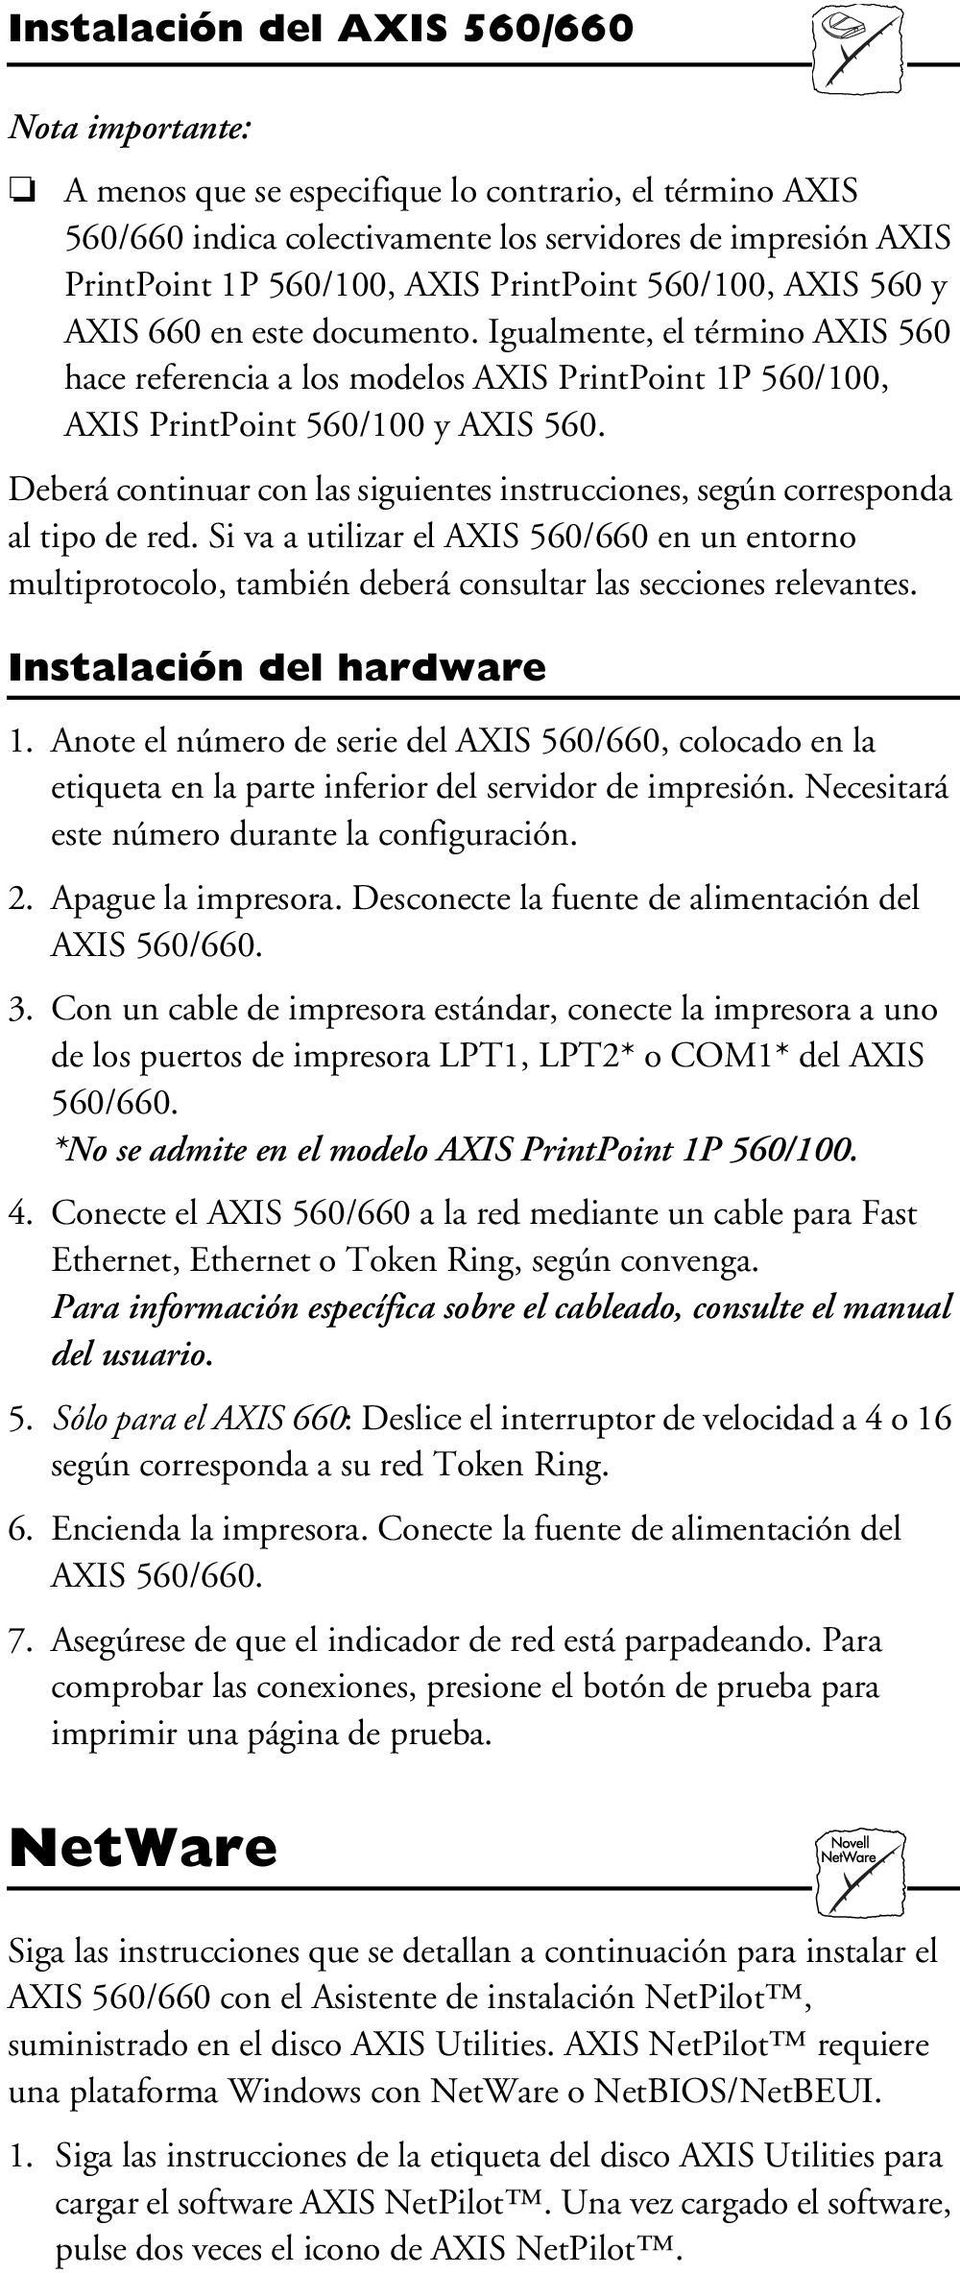 Deberá continuar con las siguientes instrucciones, según corresponda al tipo de red. Si va a utilizar el AXIS 560/660 en un entorno multiprotocolo, también deberá consultar las secciones relevantes.